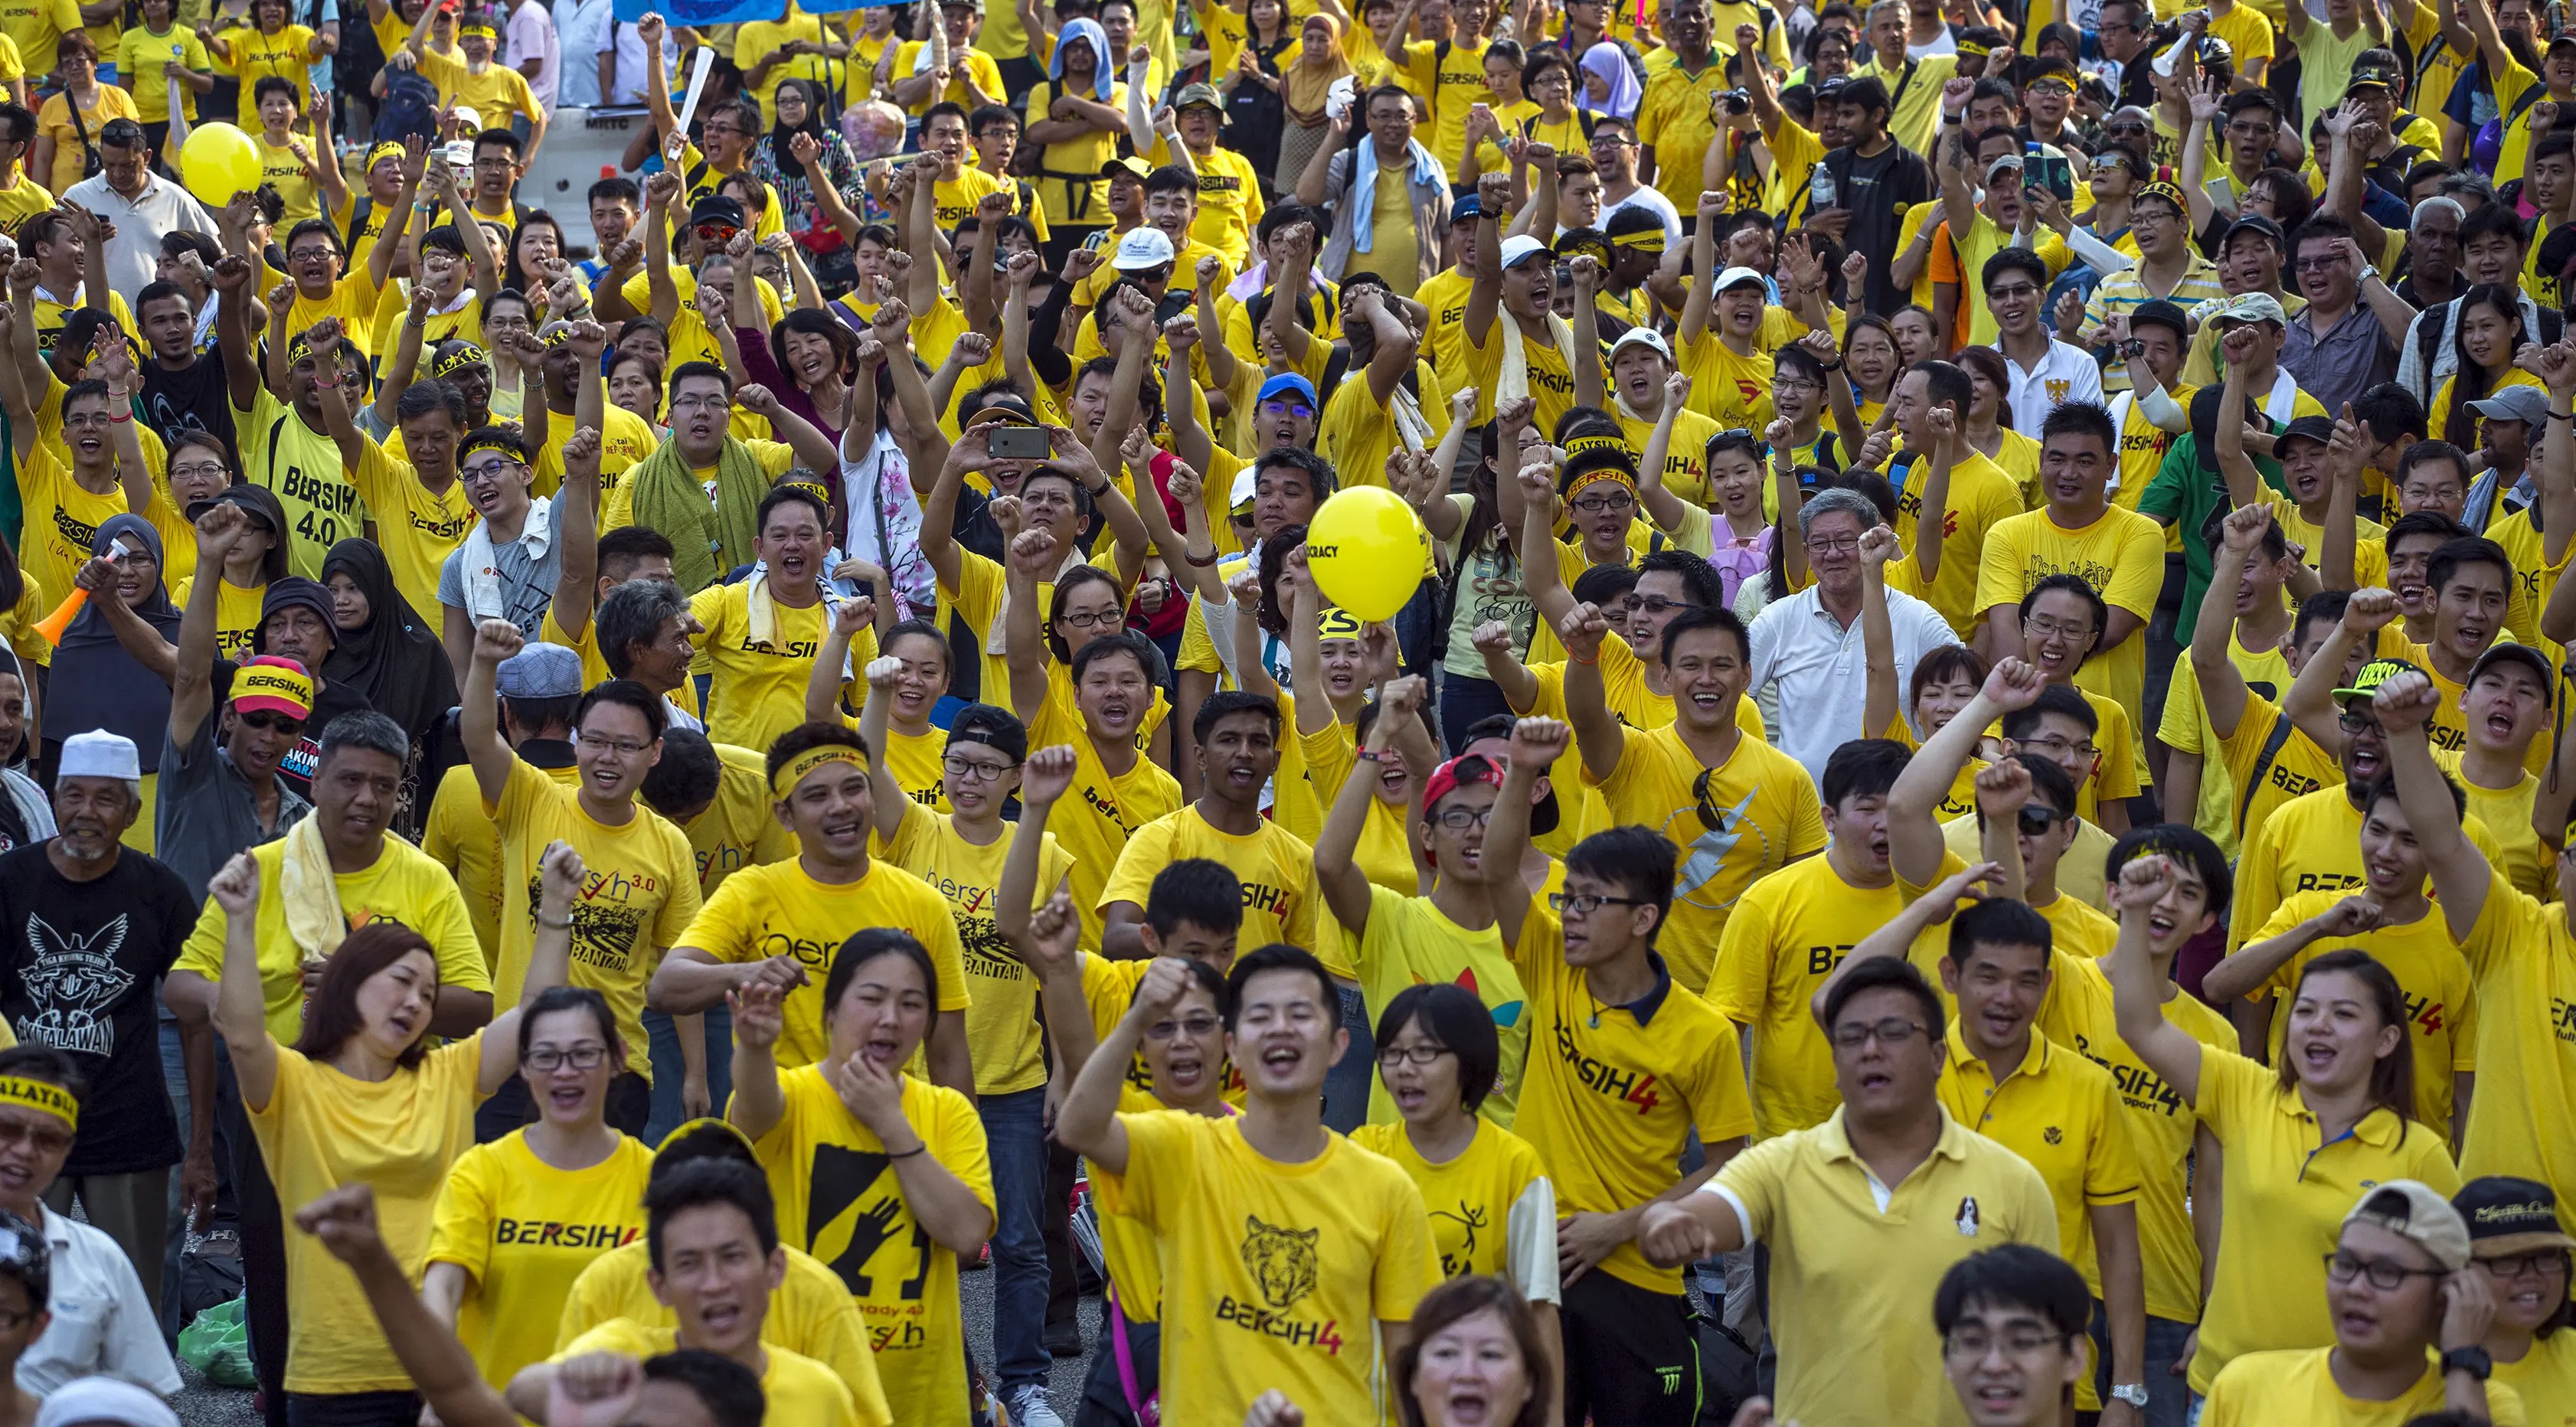 Pengunjuk rasa meneriakkan tuntutannya saat aksi gerakan Bersih 4.0 di ibukota Malaysia, Kuala Lumpur, Minggu (30/8/2015). Aksi tersebut menuntut pengunduran diri PM Malaysia Najib Razak terkait tuduhan korupsi. (REUTERS/Athit Perawongmetha)